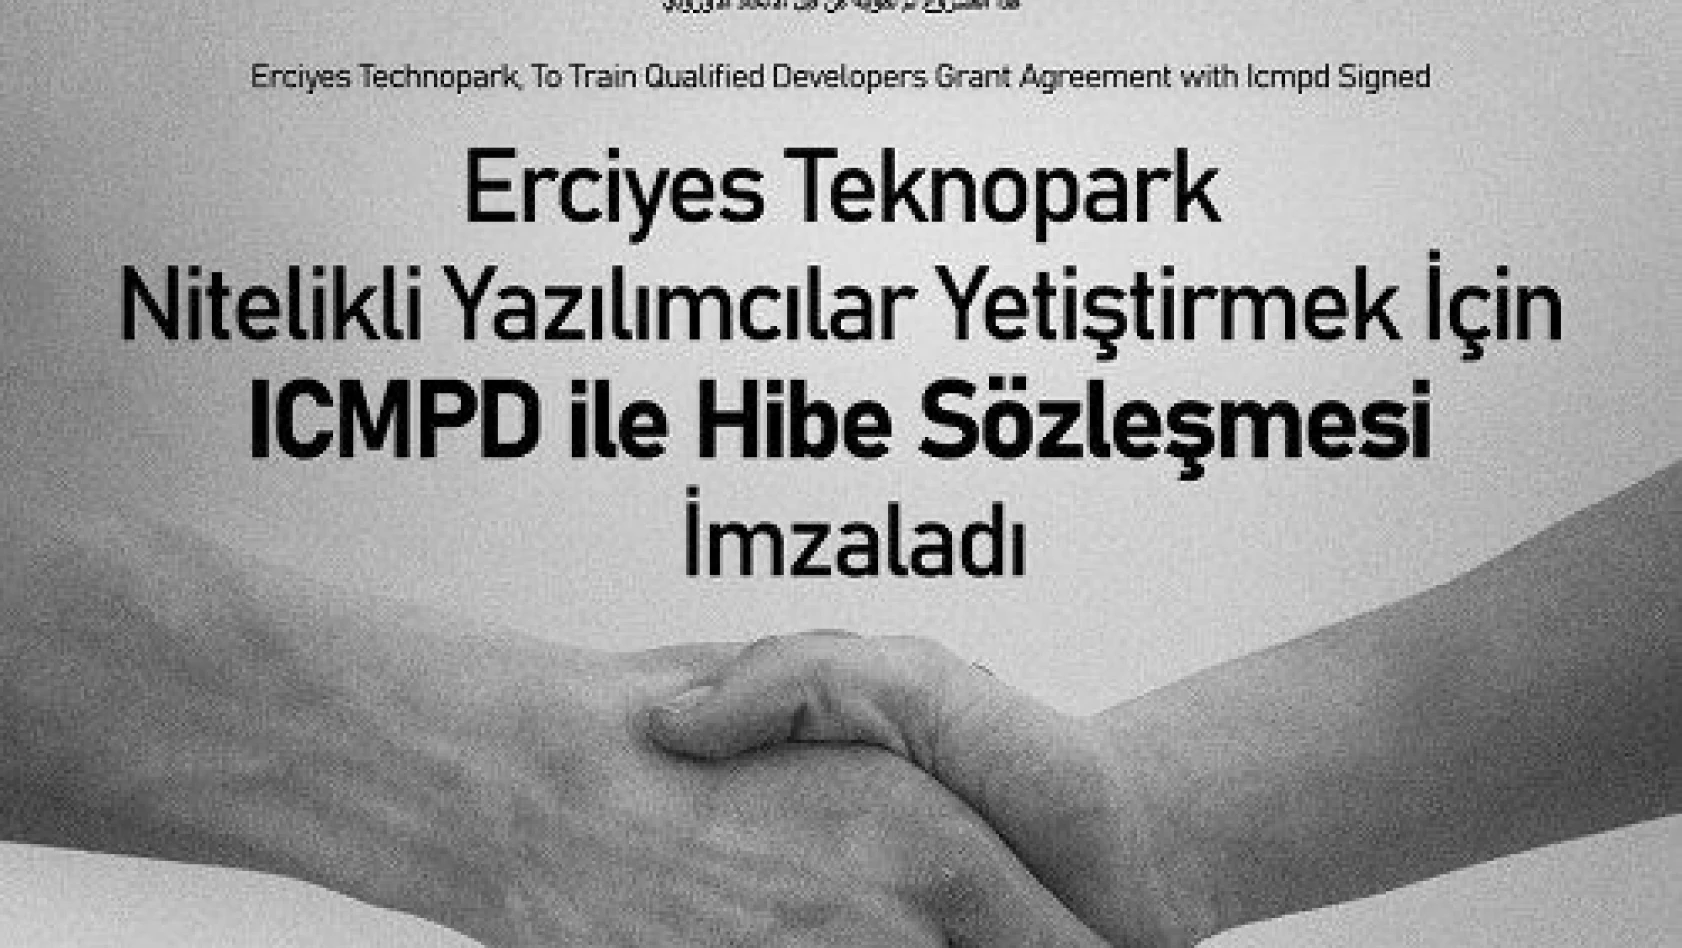 Erciyes Teknopark, nitelikli yazılımcılar yetiştirmek için ıcmpd ile hibe sözleşmesi imzaladı